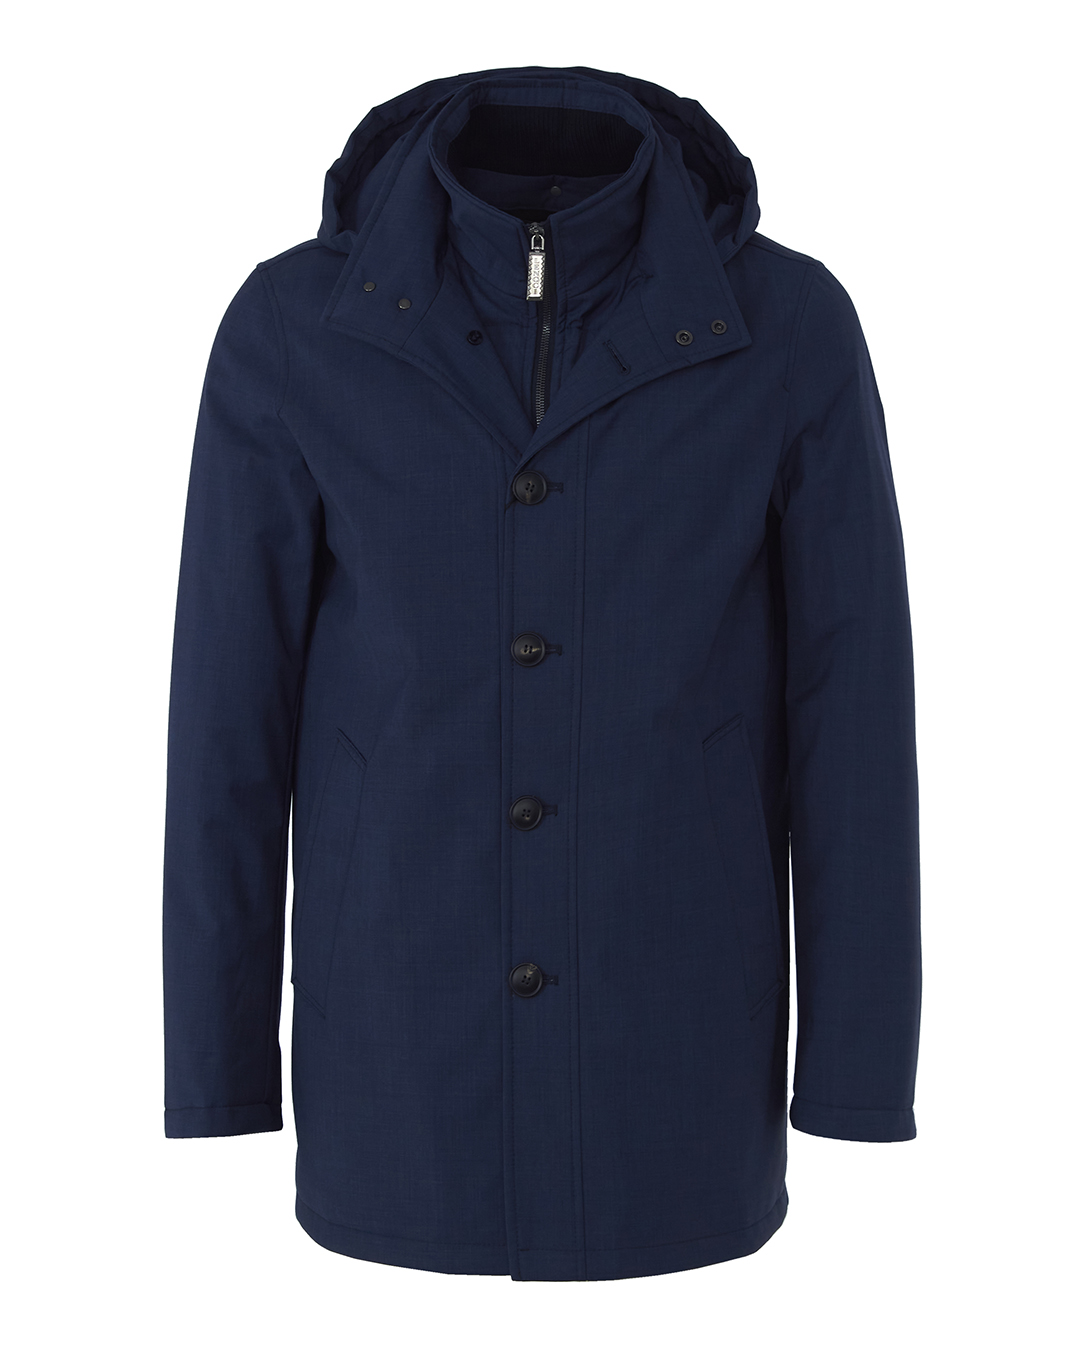 Пальто мужское LENOCI M30L80-202 синее 54